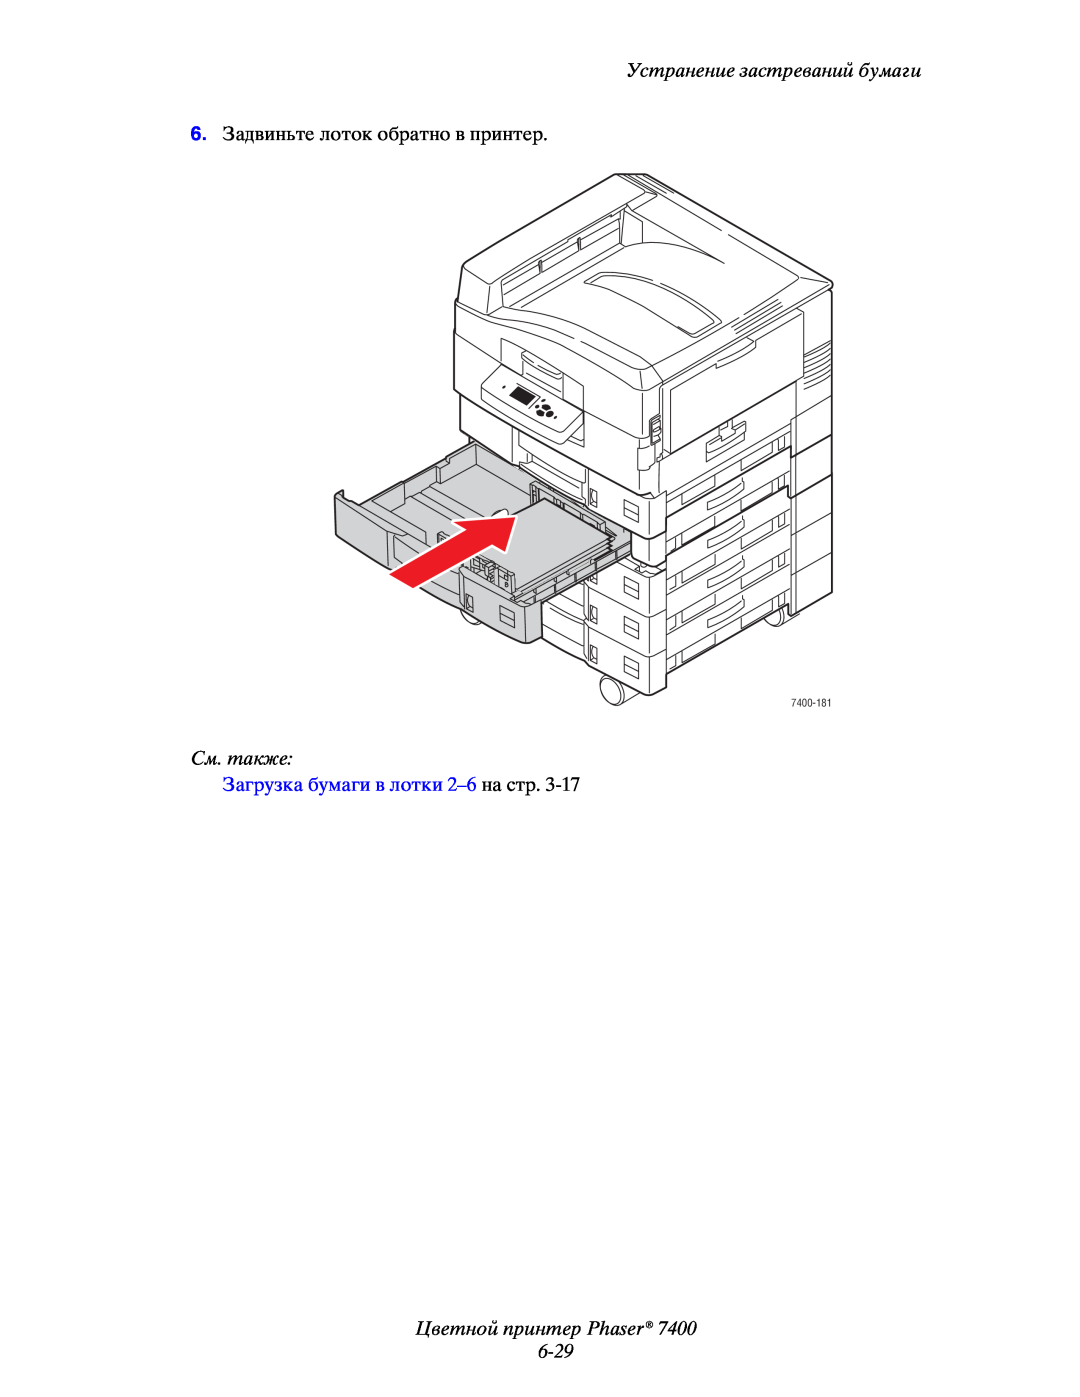 Xerox 7400 manual Цветной принтер Phaser 6-29, Устранение застреваний бумаги, См. также, Загрузка бумаги в лотки 2–6 на стр 